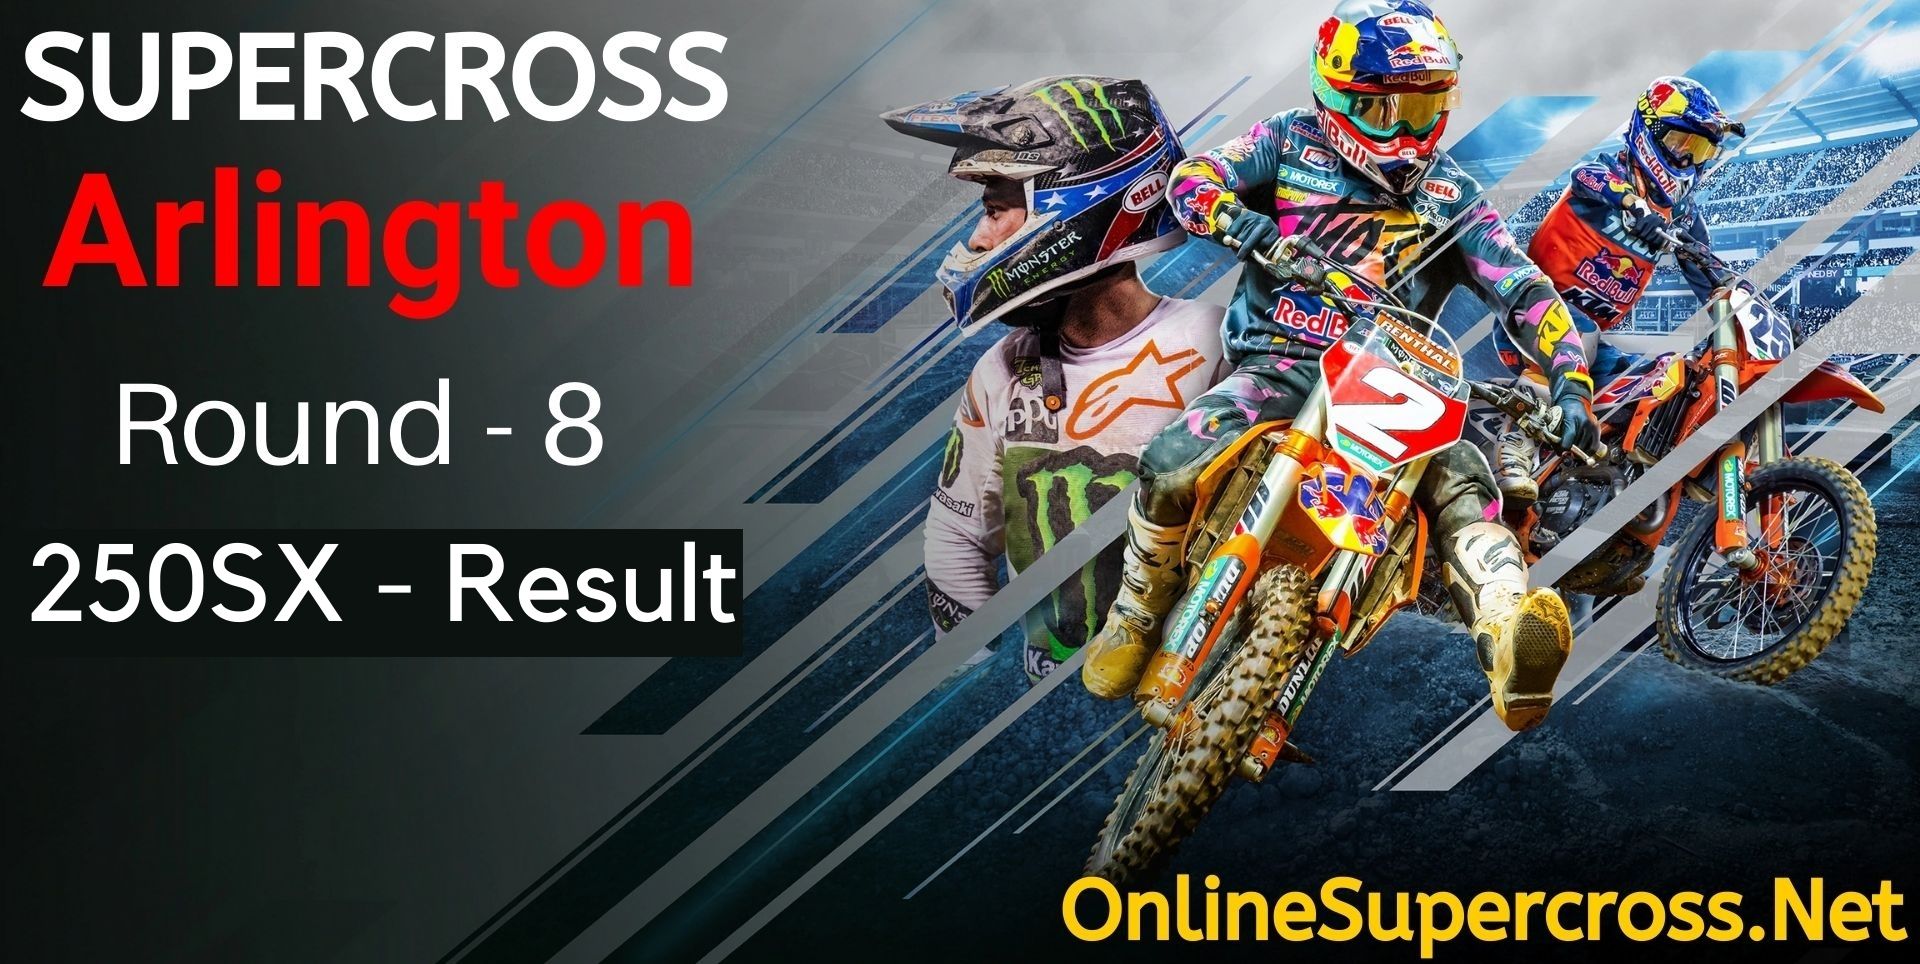 Arlington Round 8 Supercross 250SX Result 2022